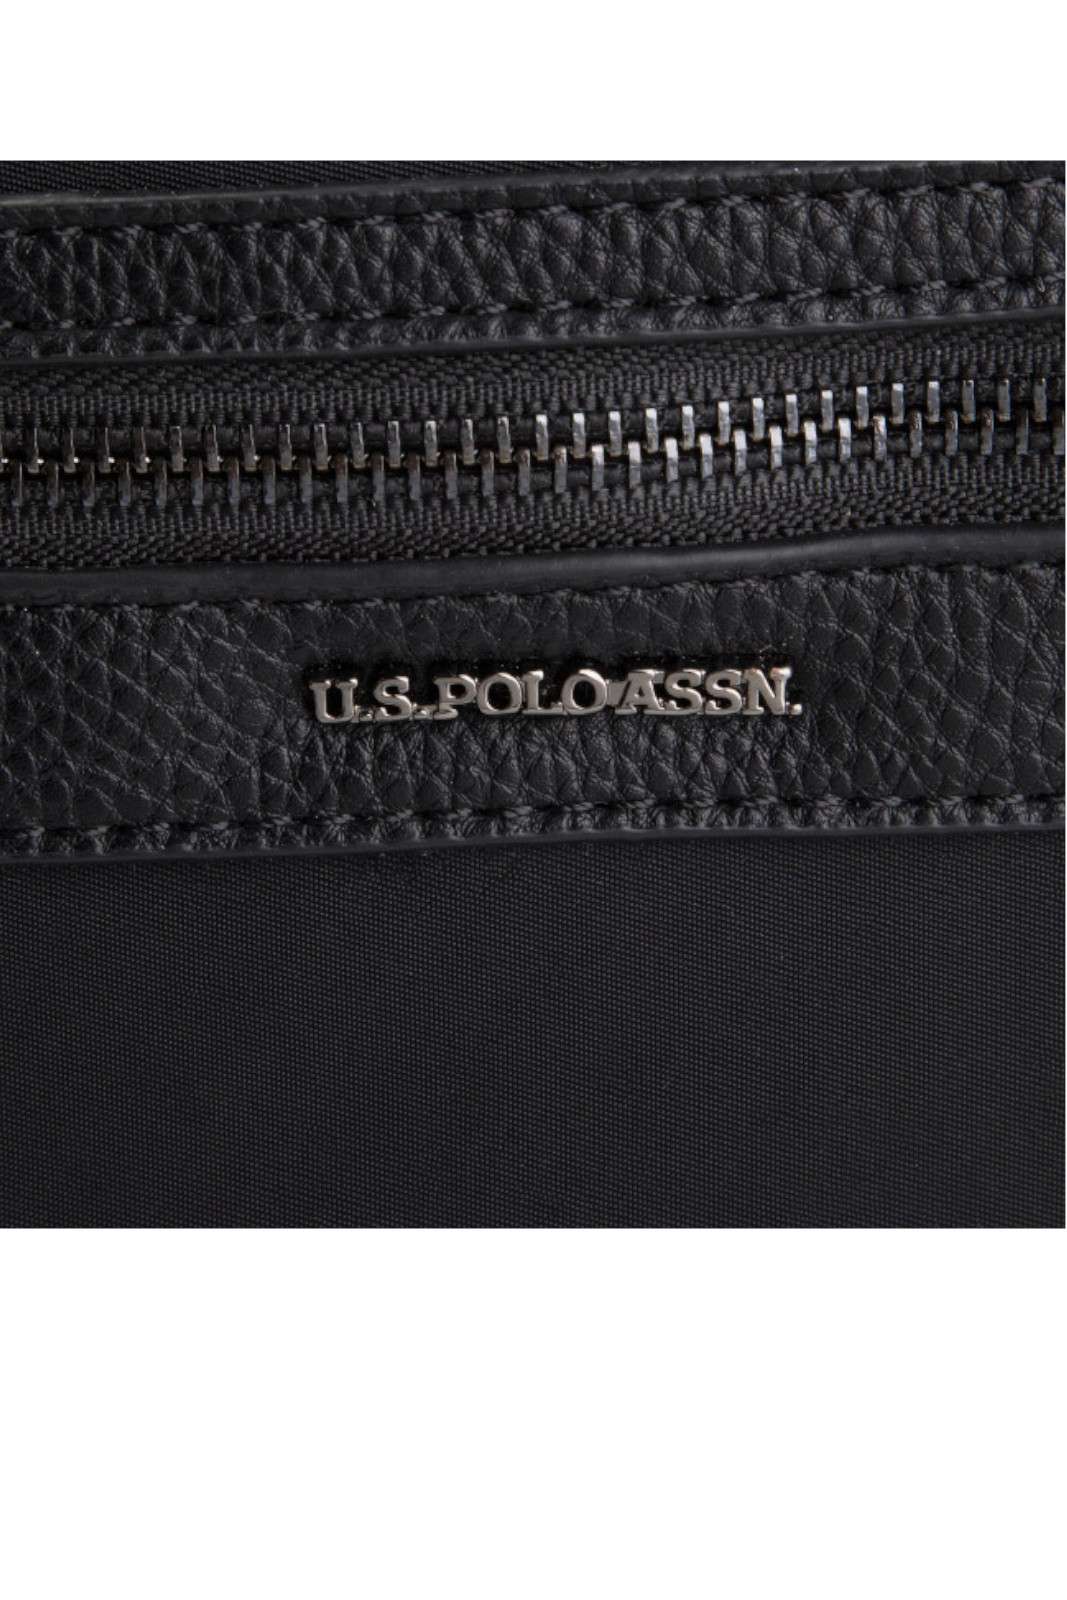 US Polo Assn. borsa porta pc BEUDT0528MIP000